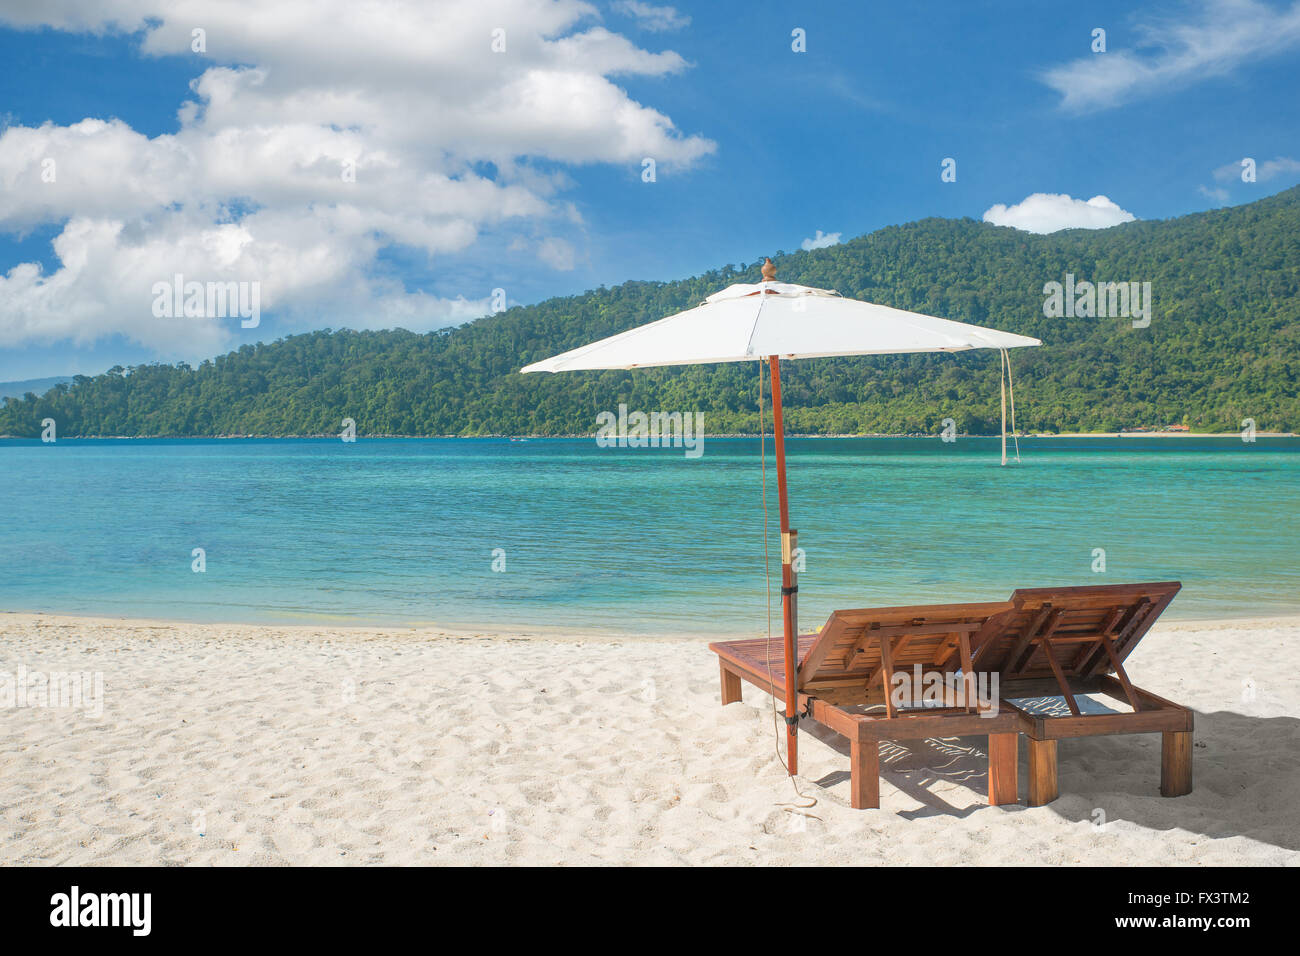 L'été, les voyages, vacances et maison de vacances concept - chaises de plage et parasol sur l'île de Phuket, Thaïlande Banque D'Images